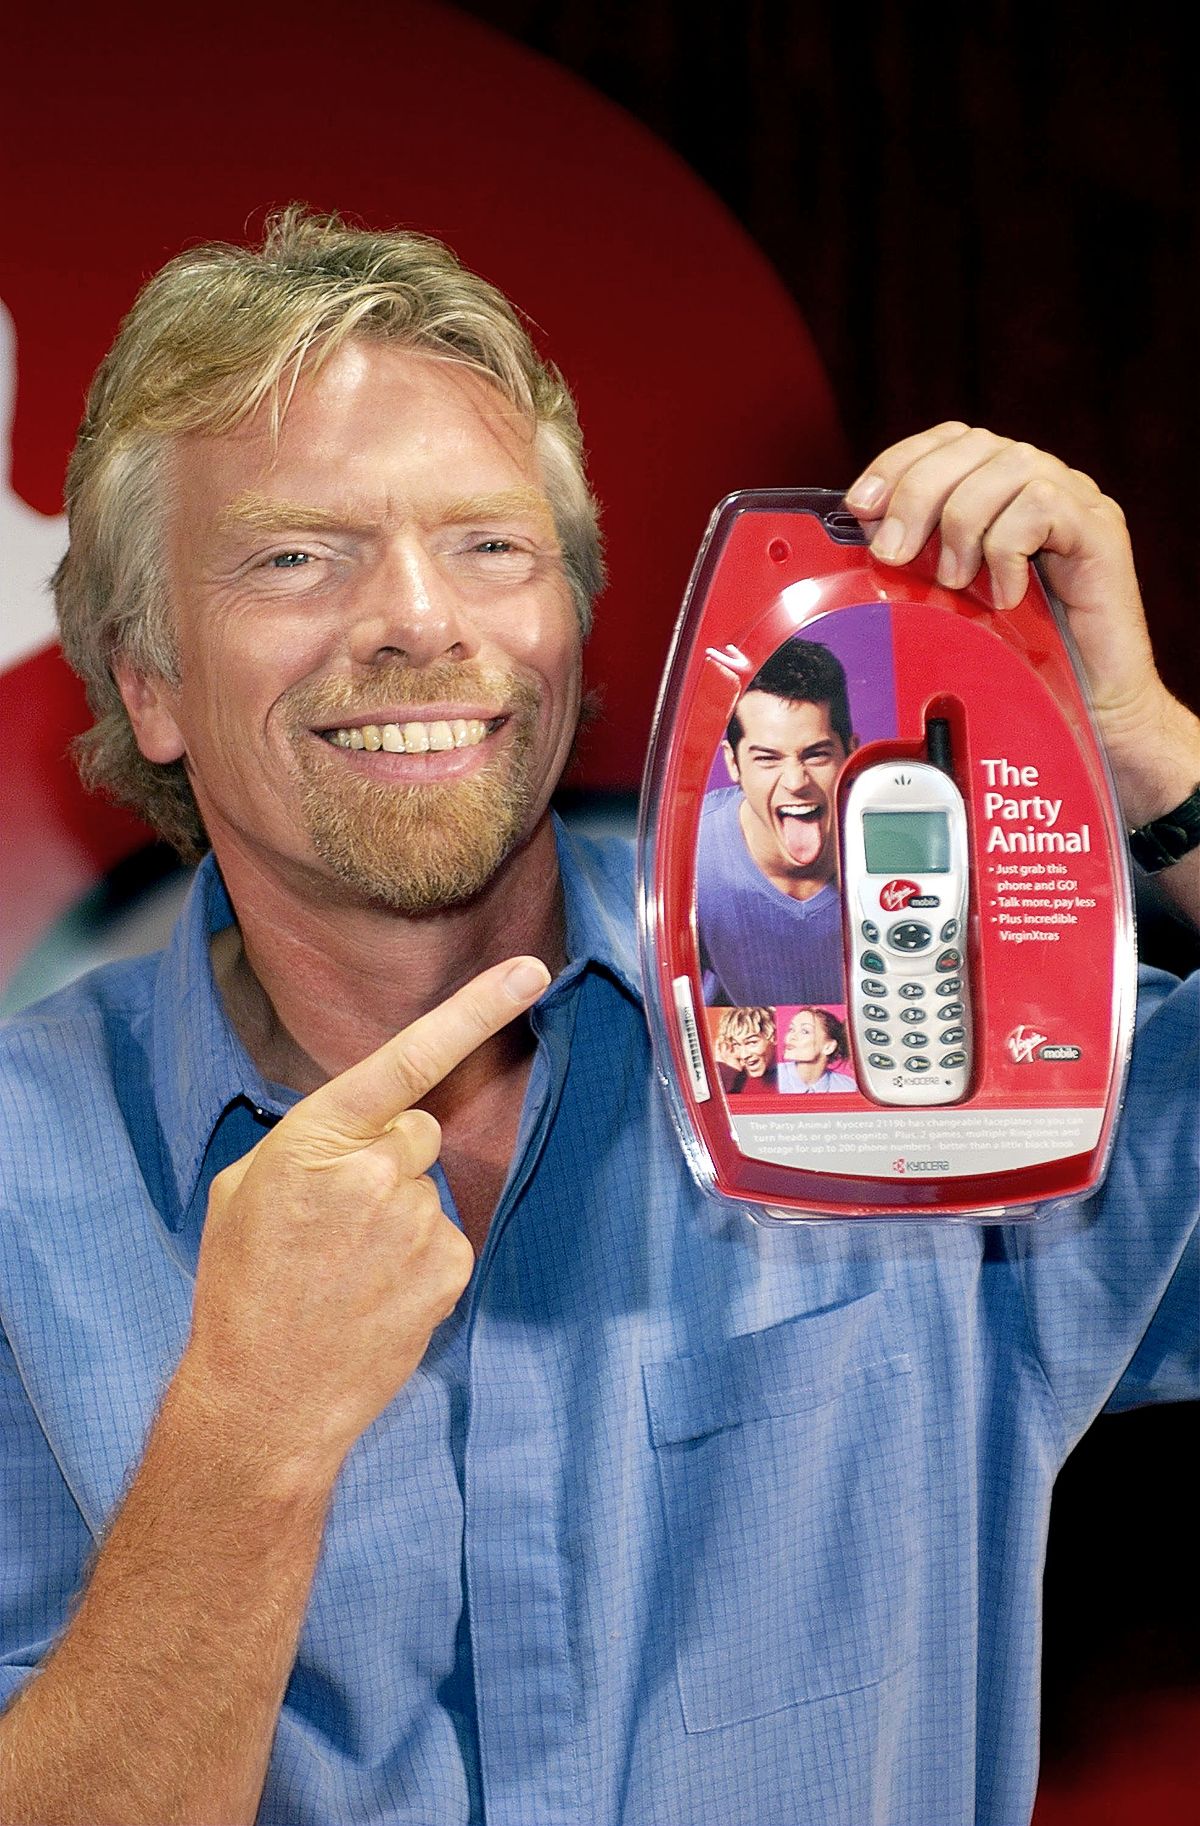 Ричард Брэнсон объявил о запуске в США услуги мобильной связи Virgin